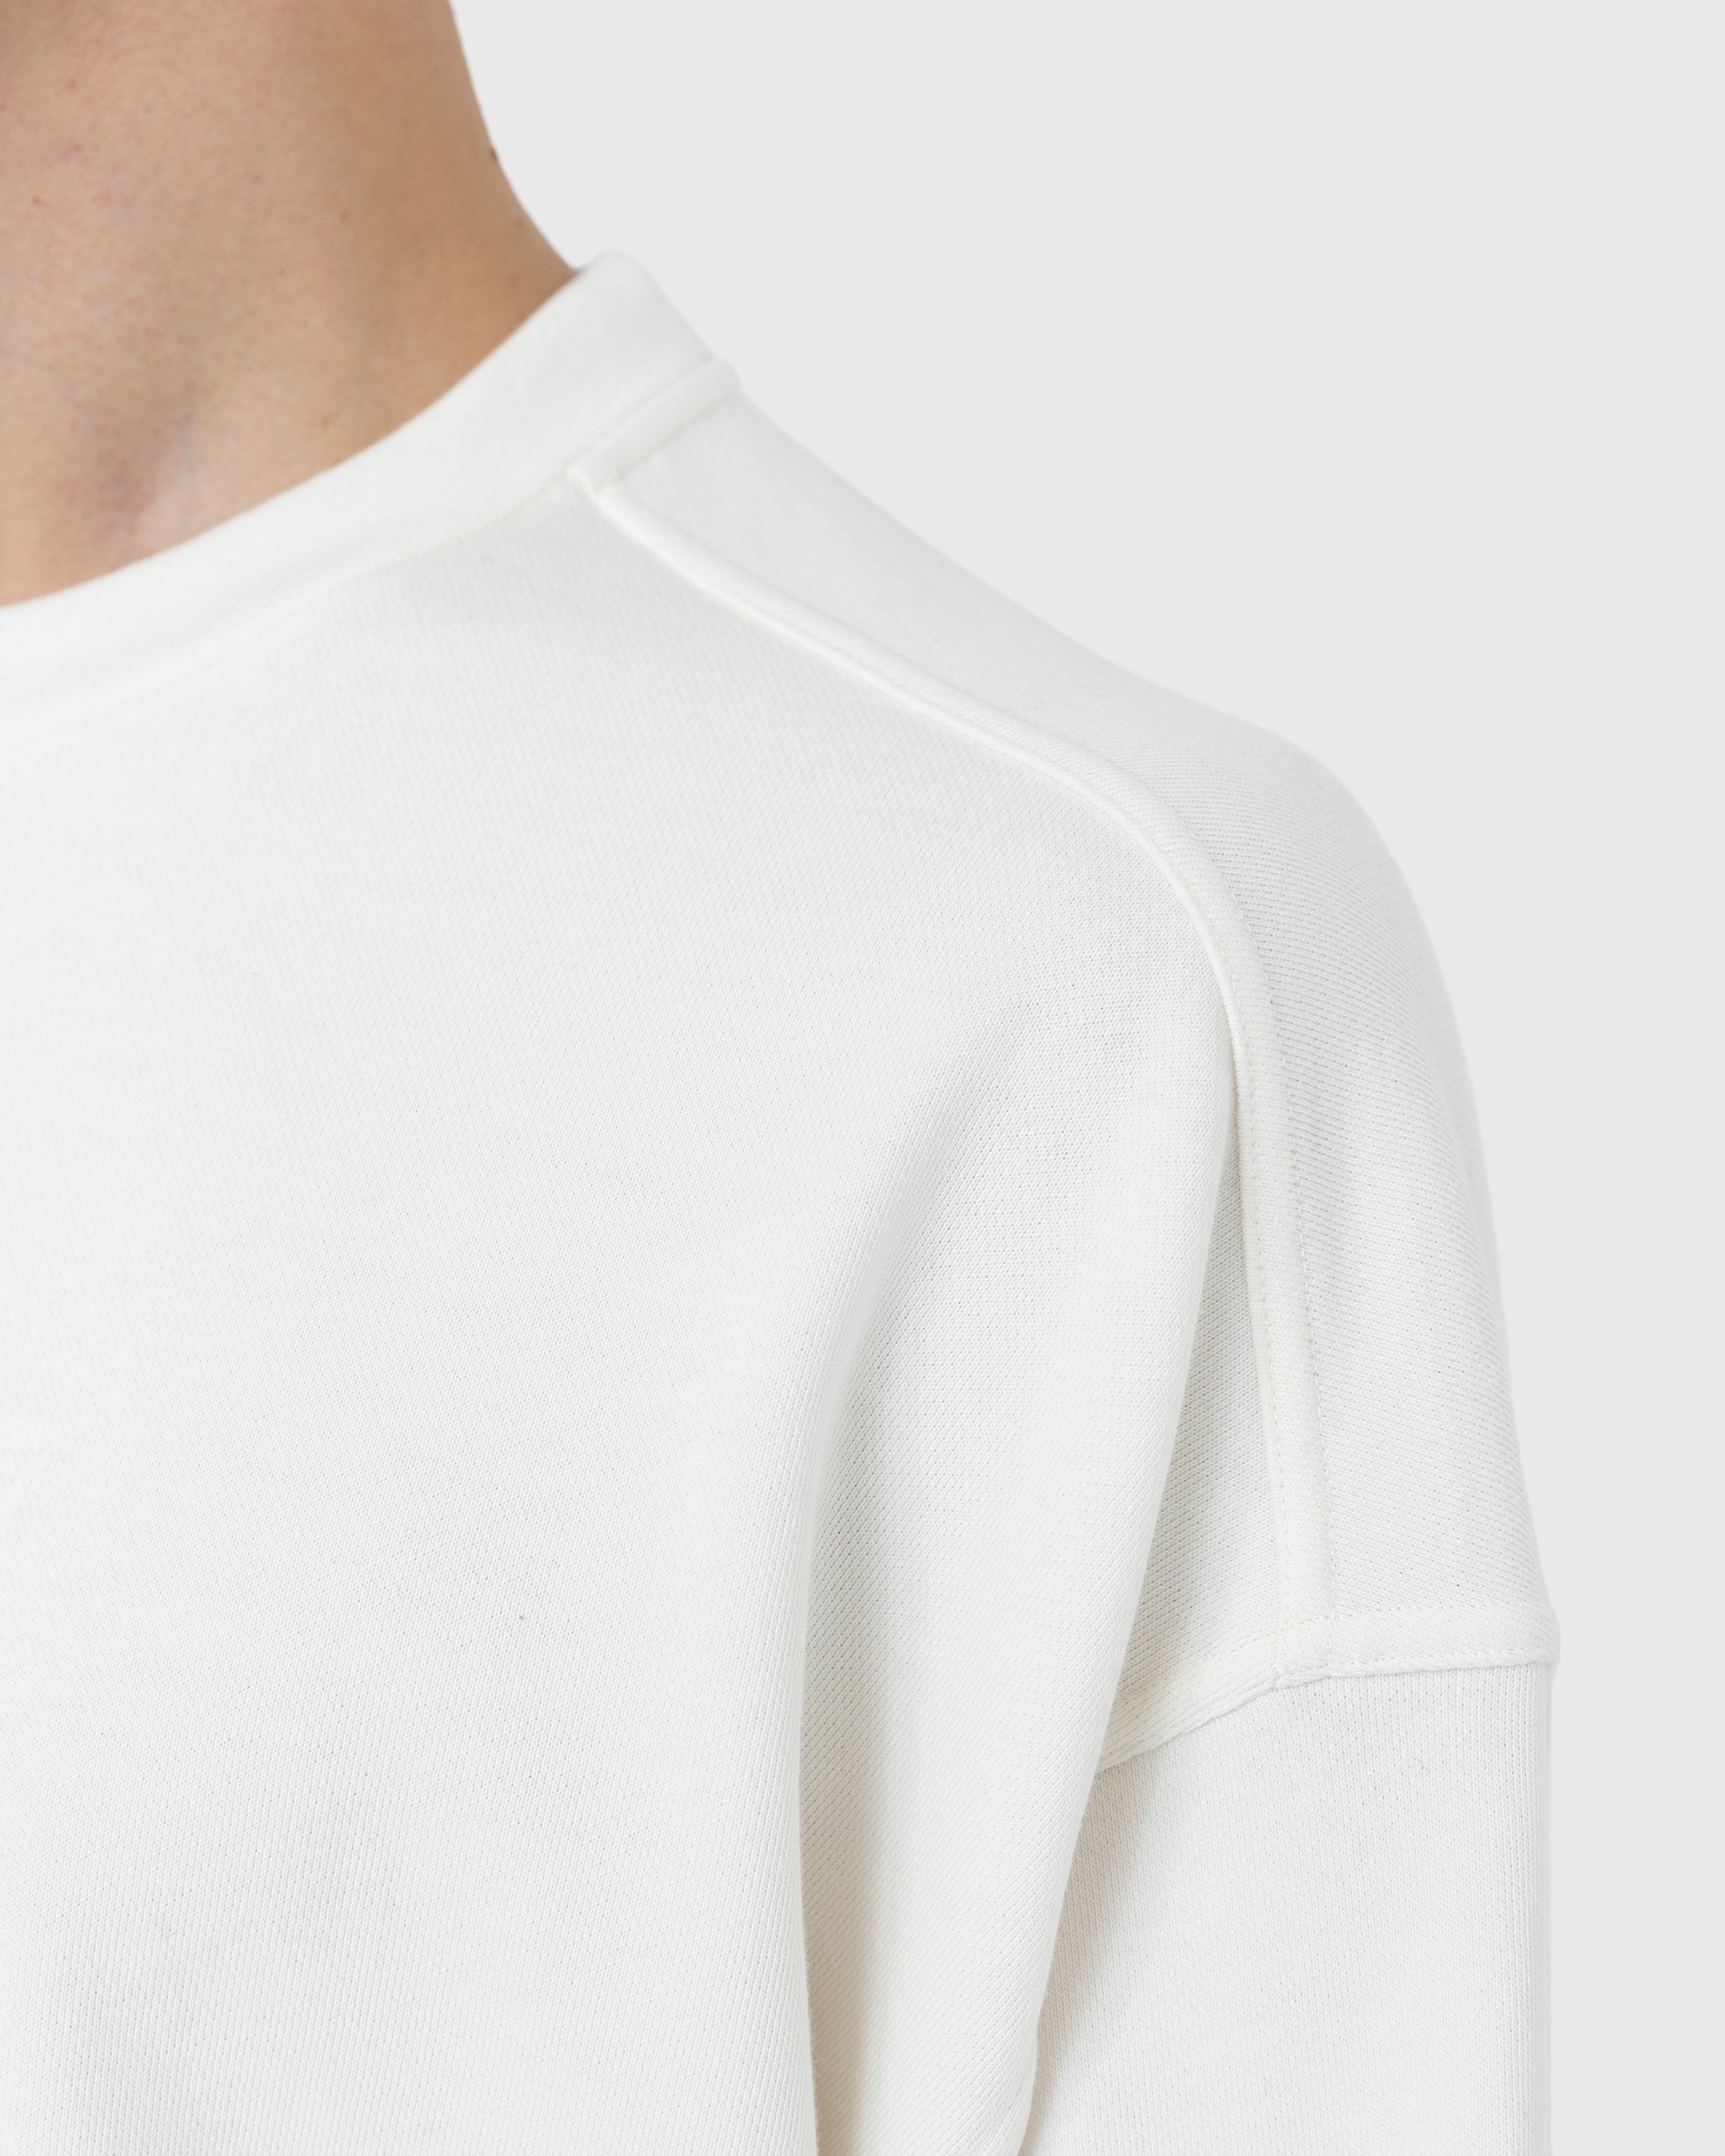 Jil Sander - Logo Sweatshirt Beige - Clothing - Beige - Image 3